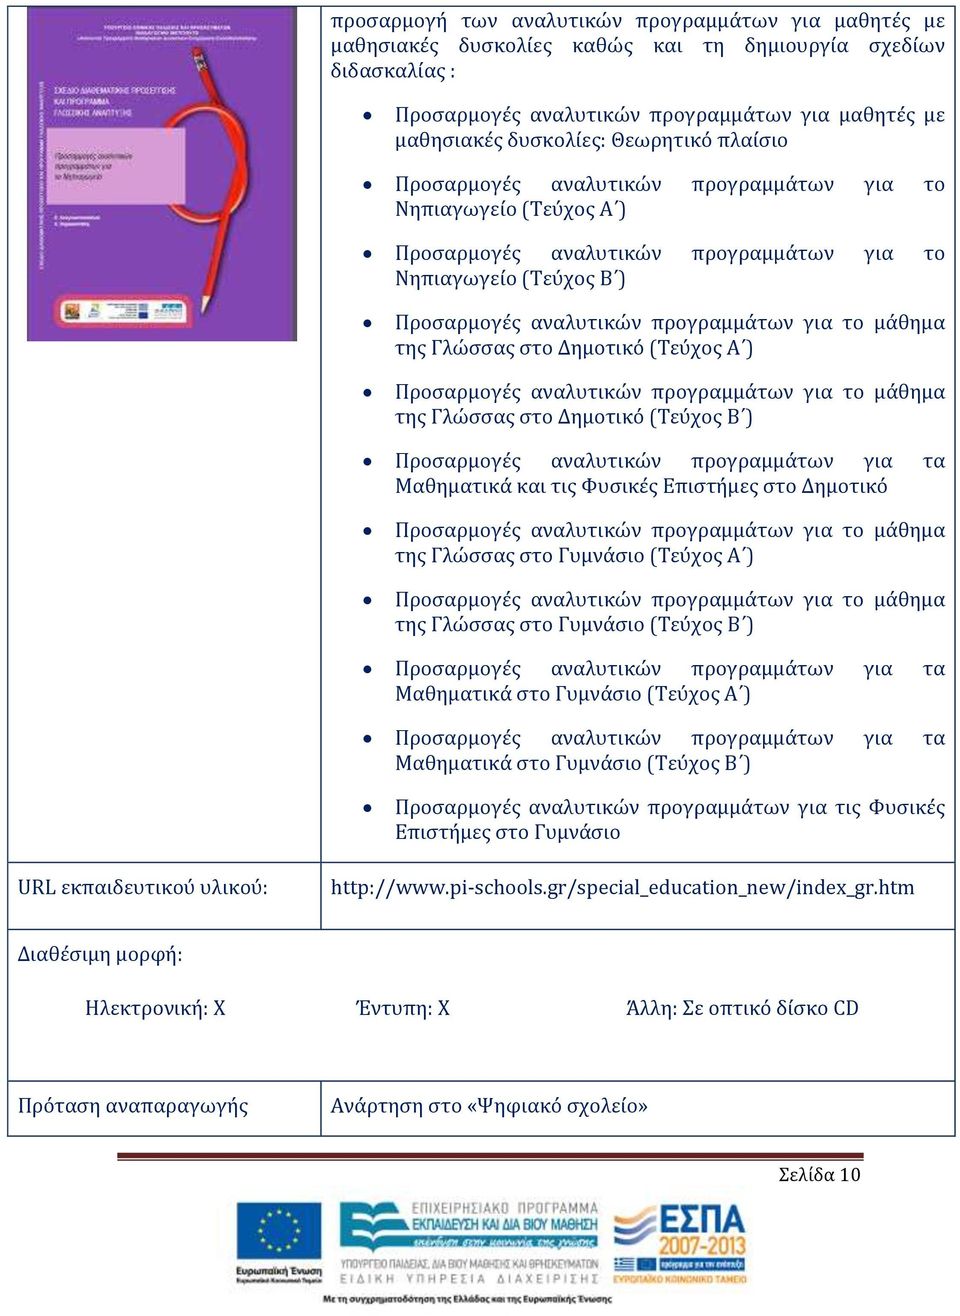 μάθημα της Γλώσσας στο Δημοτικό (Τεύχος Α ) Προσαρμογές αναλυτικών προγραμμάτων για το μάθημα της Γλώσσας στο Δημοτικό (Τεύχος Β ) Προσαρμογές αναλυτικών προγραμμάτων για τα Μαθηματικά και τις